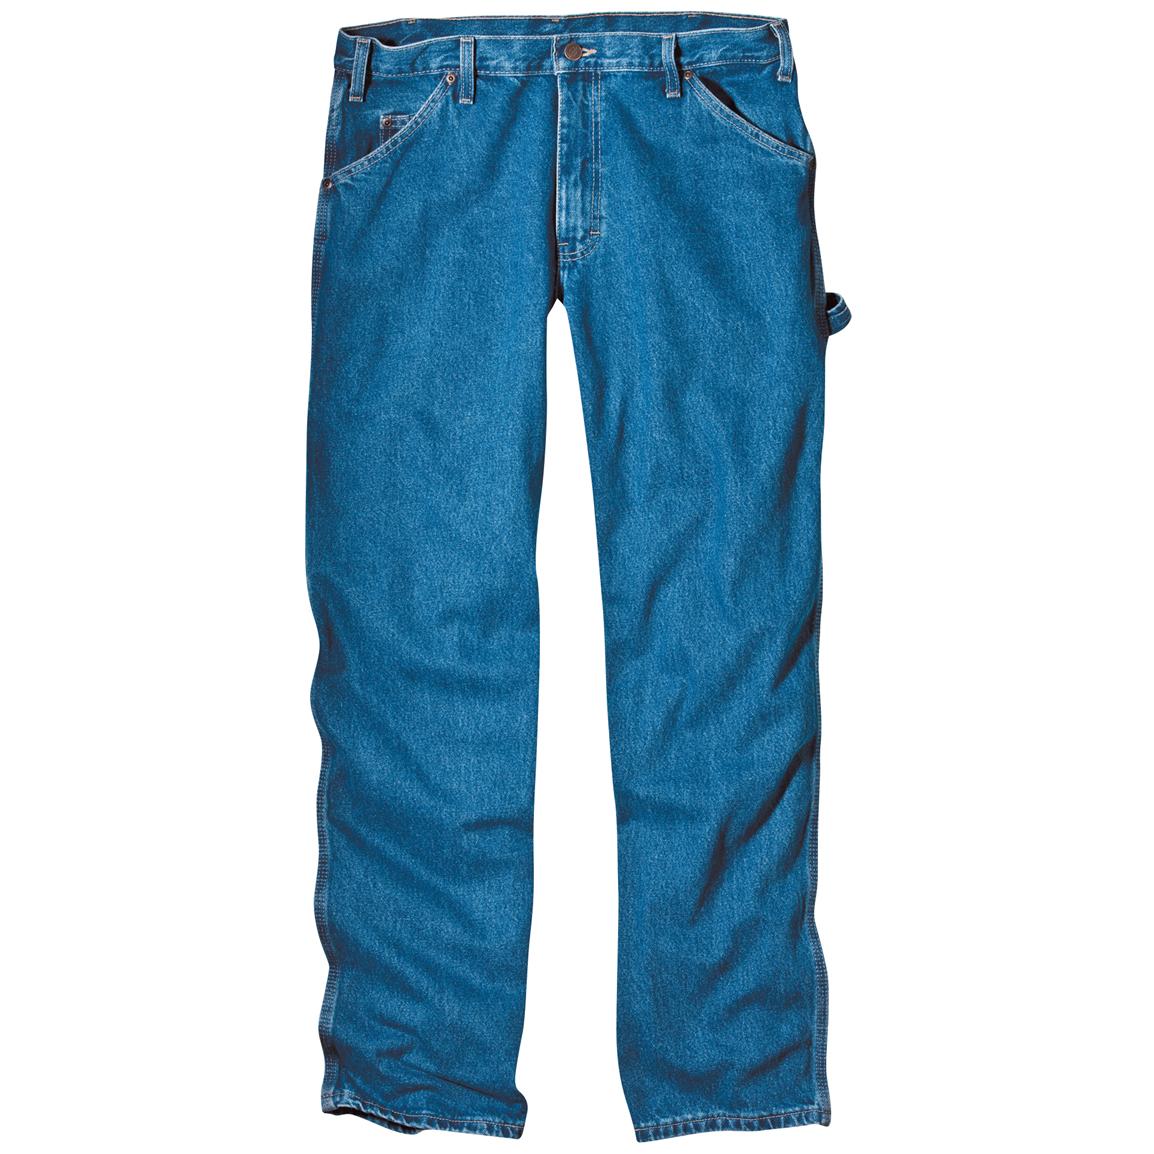 Clothing Clip art. jeans clip - Blue Jeans Clip Art